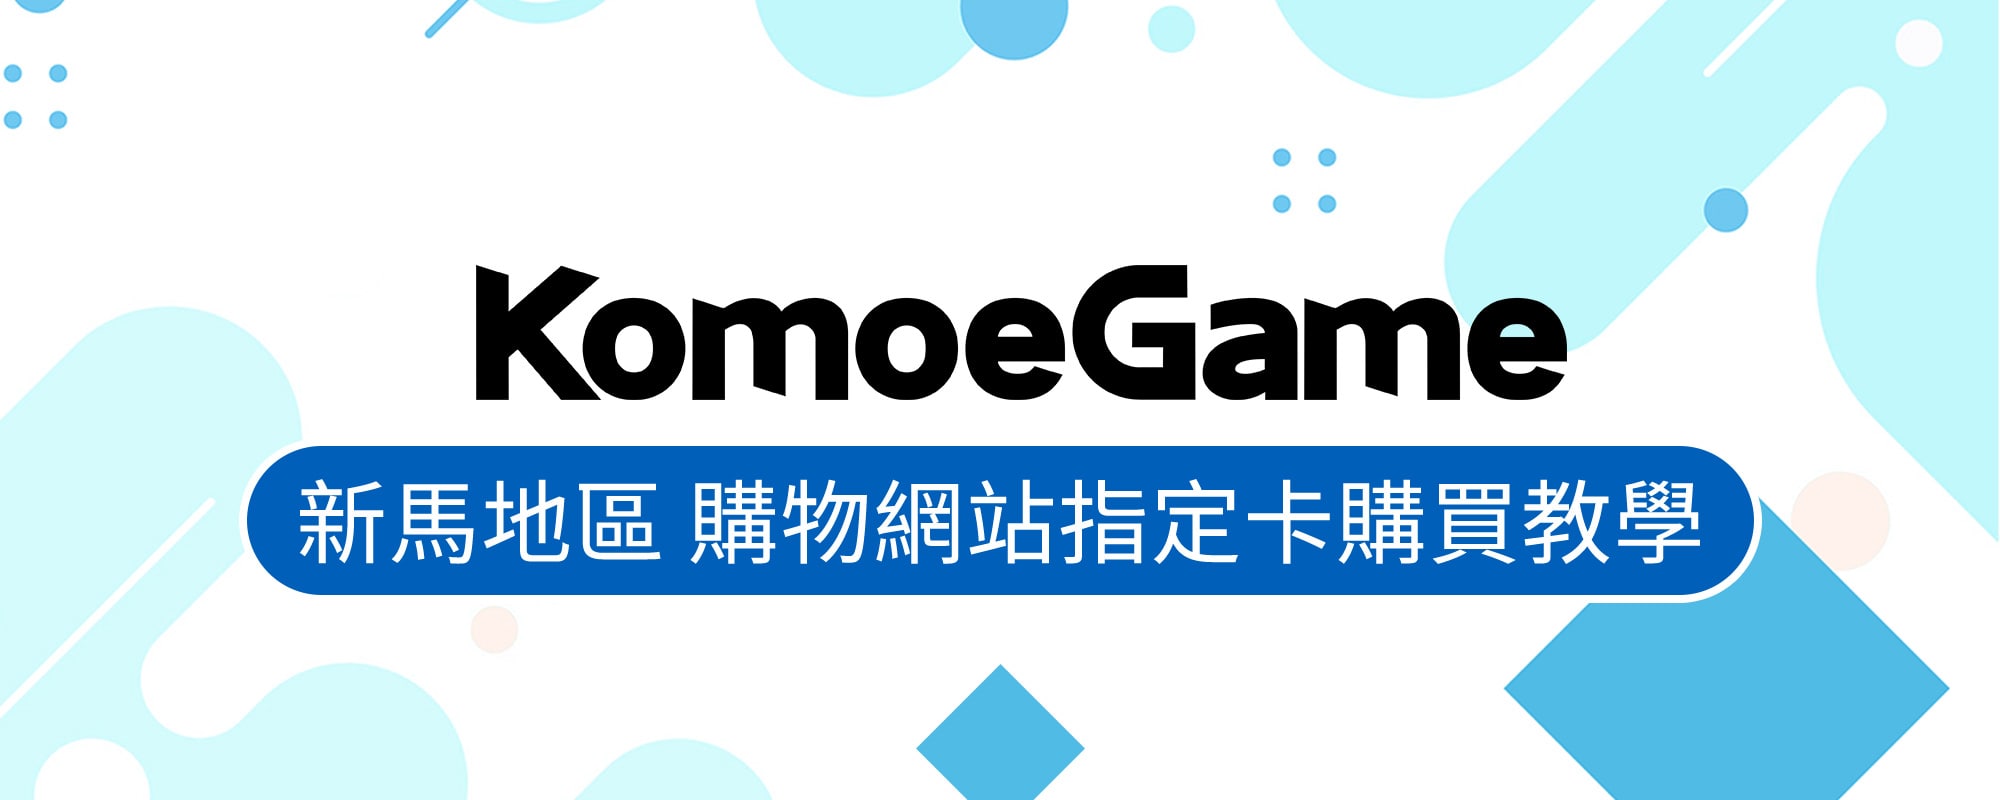   KOMOE GAME儲值 – 新馬地區 購物網站